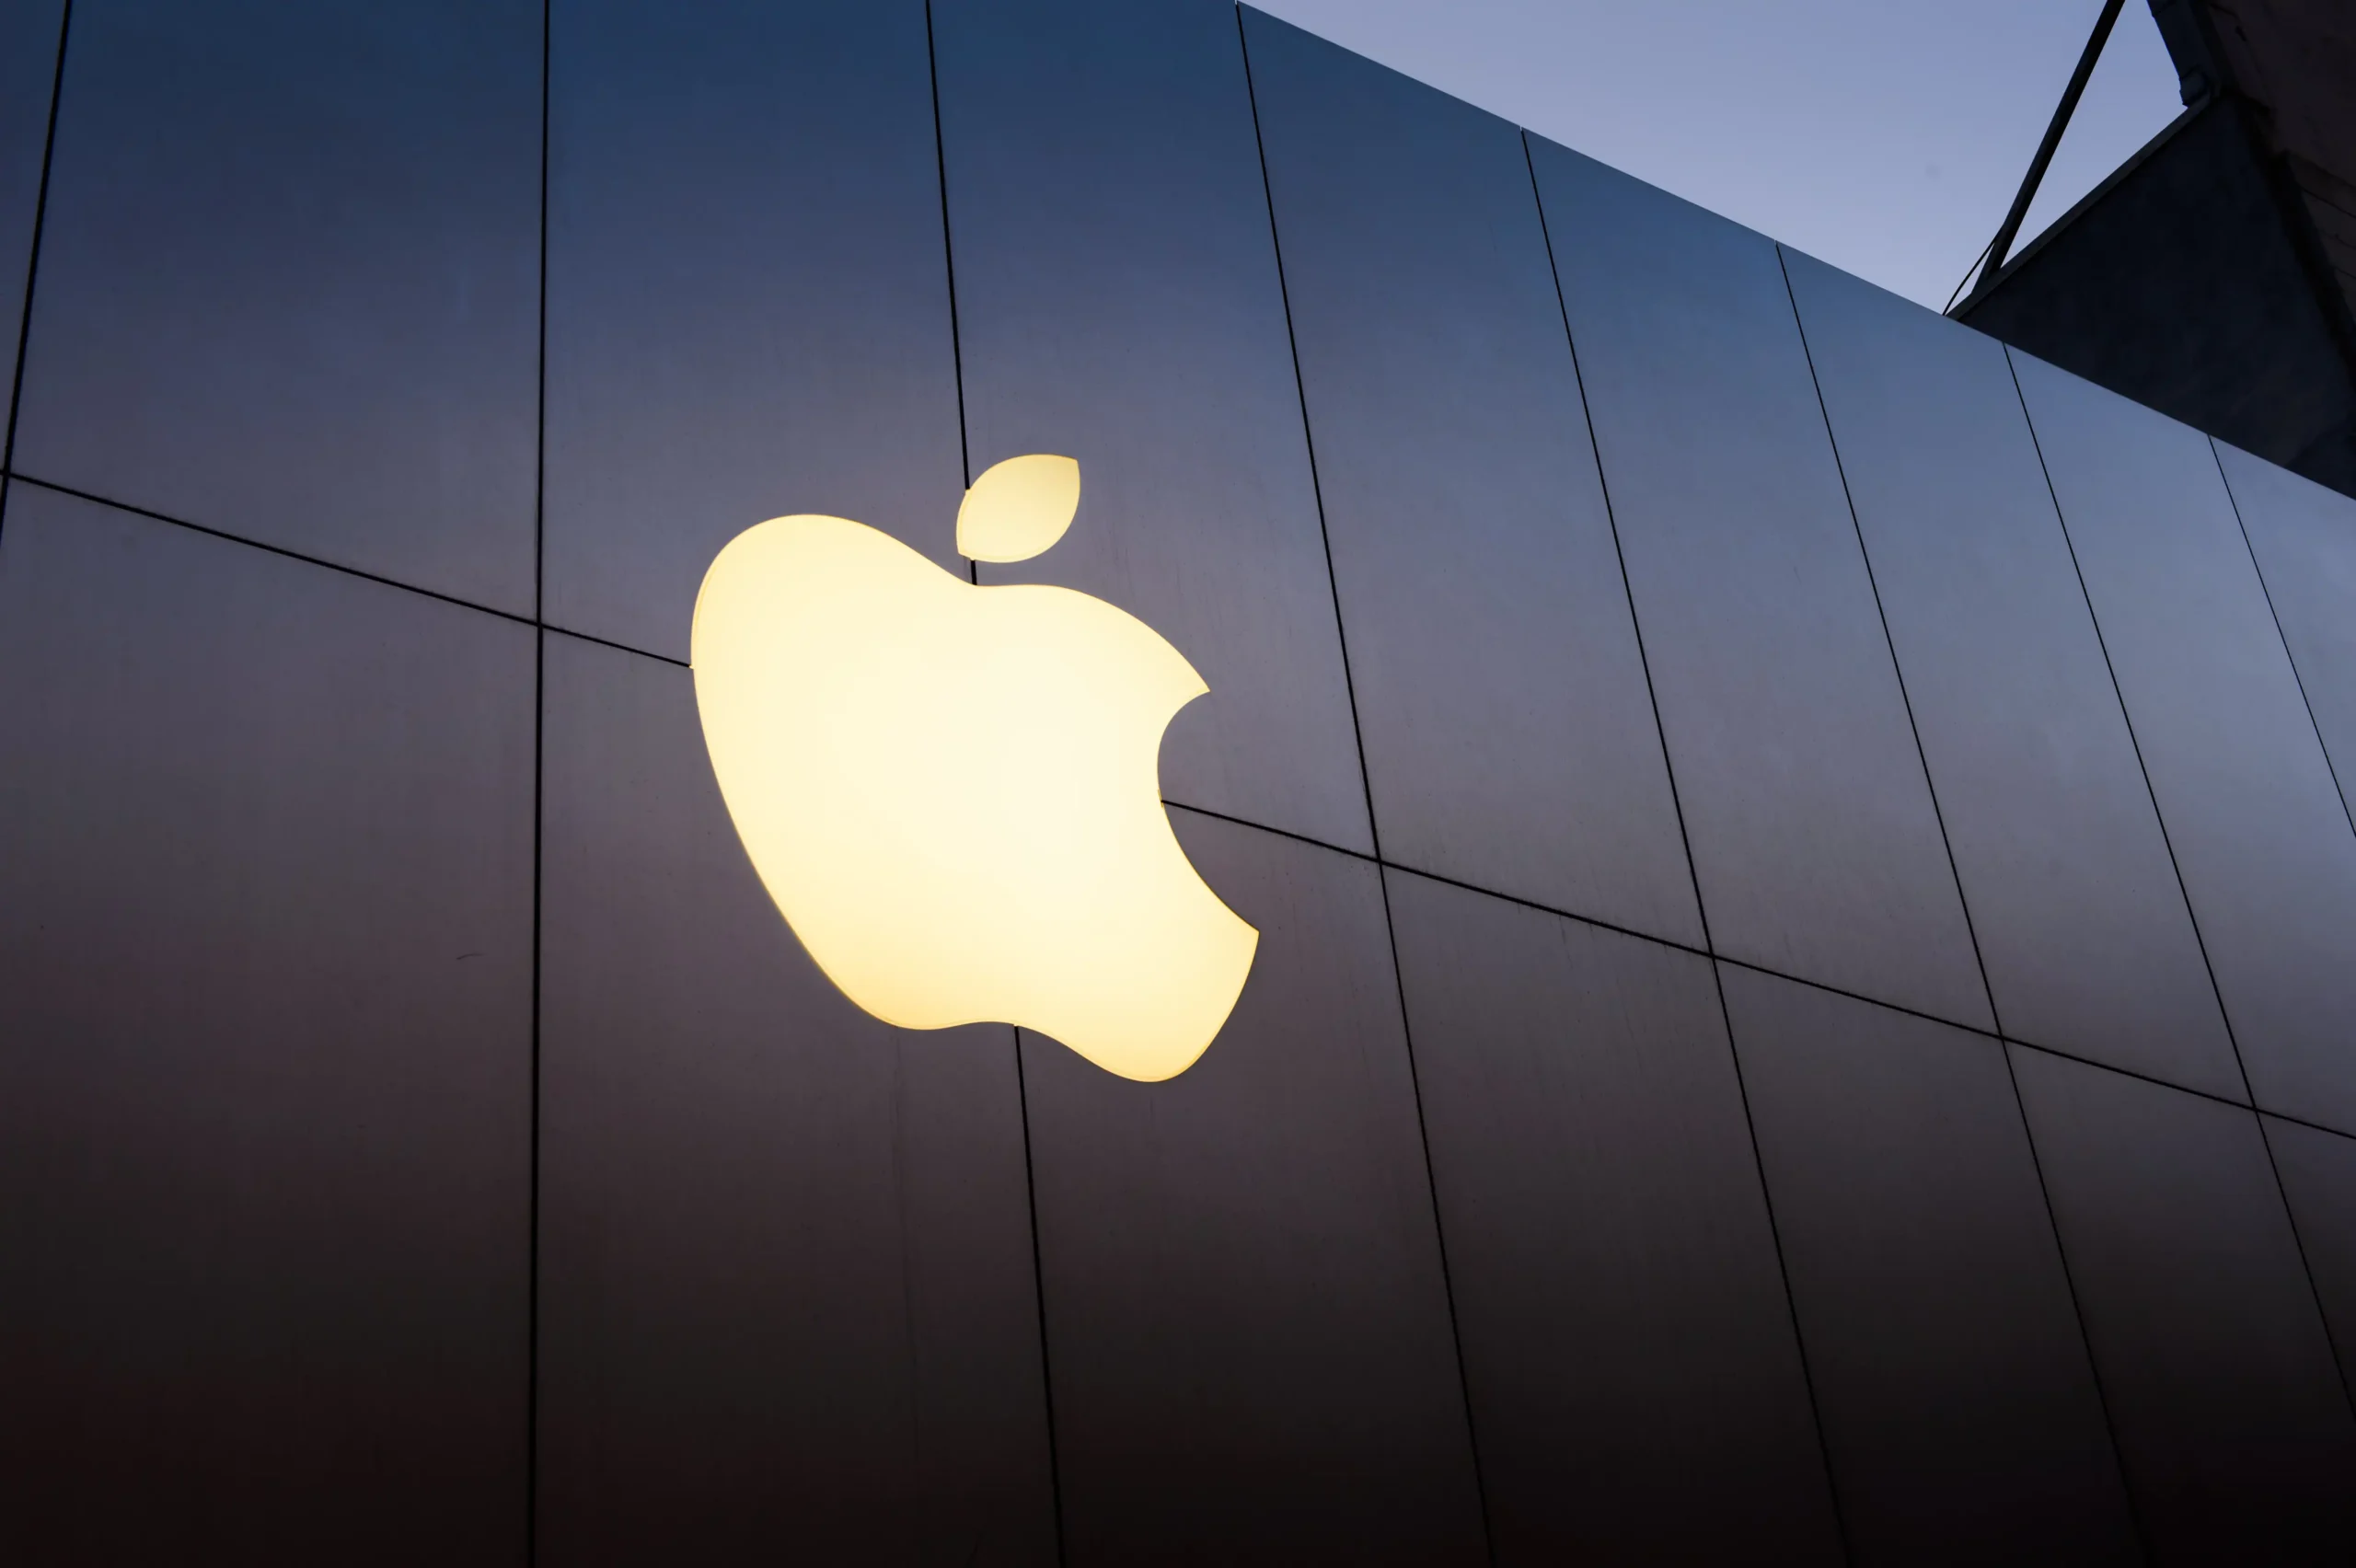 Grande lancamento da Apple nao anima os acionistas e valor cai scaled